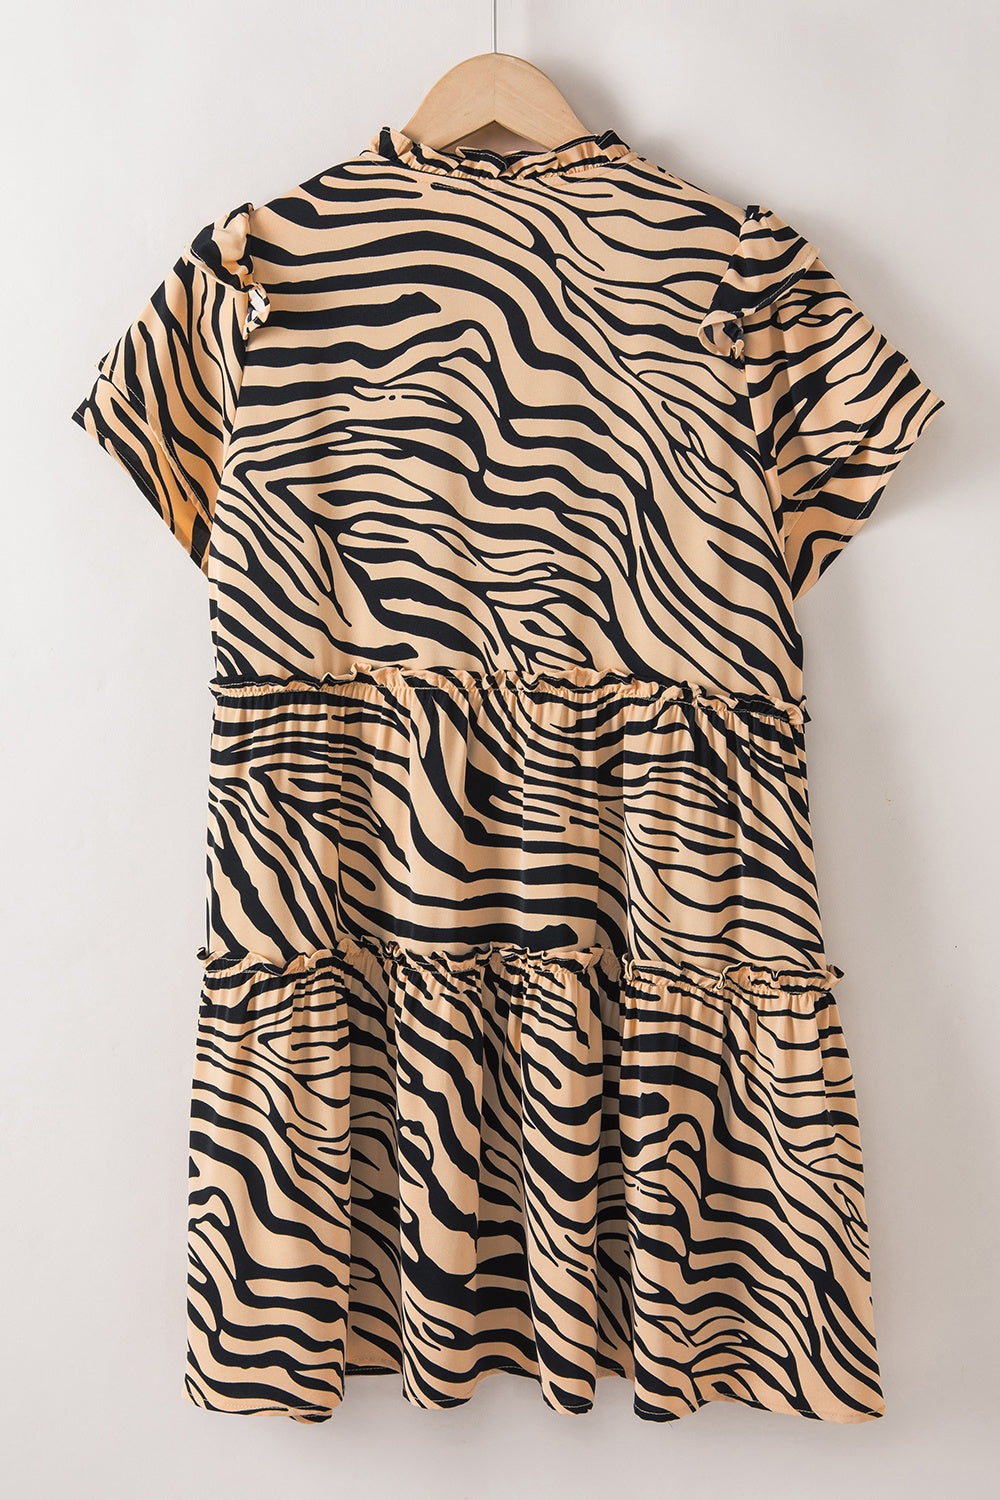 TEEK - Ruffled Tiger Print Tie Neck Dress DRESS TEEK Trend   